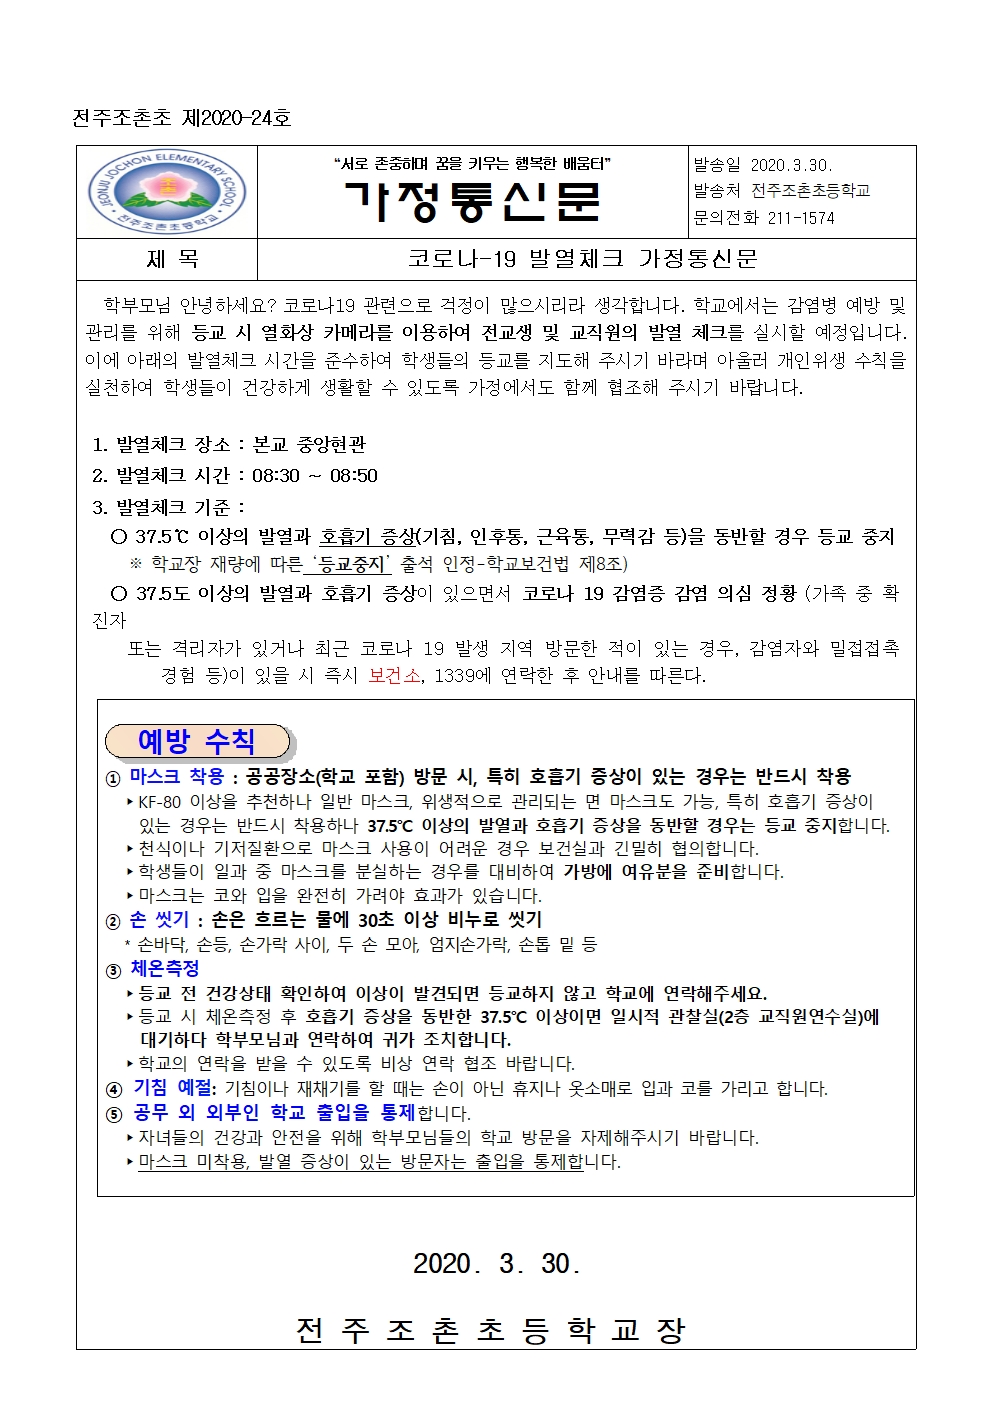 2020-24호 코로나19 예방 가정통신문(2)001